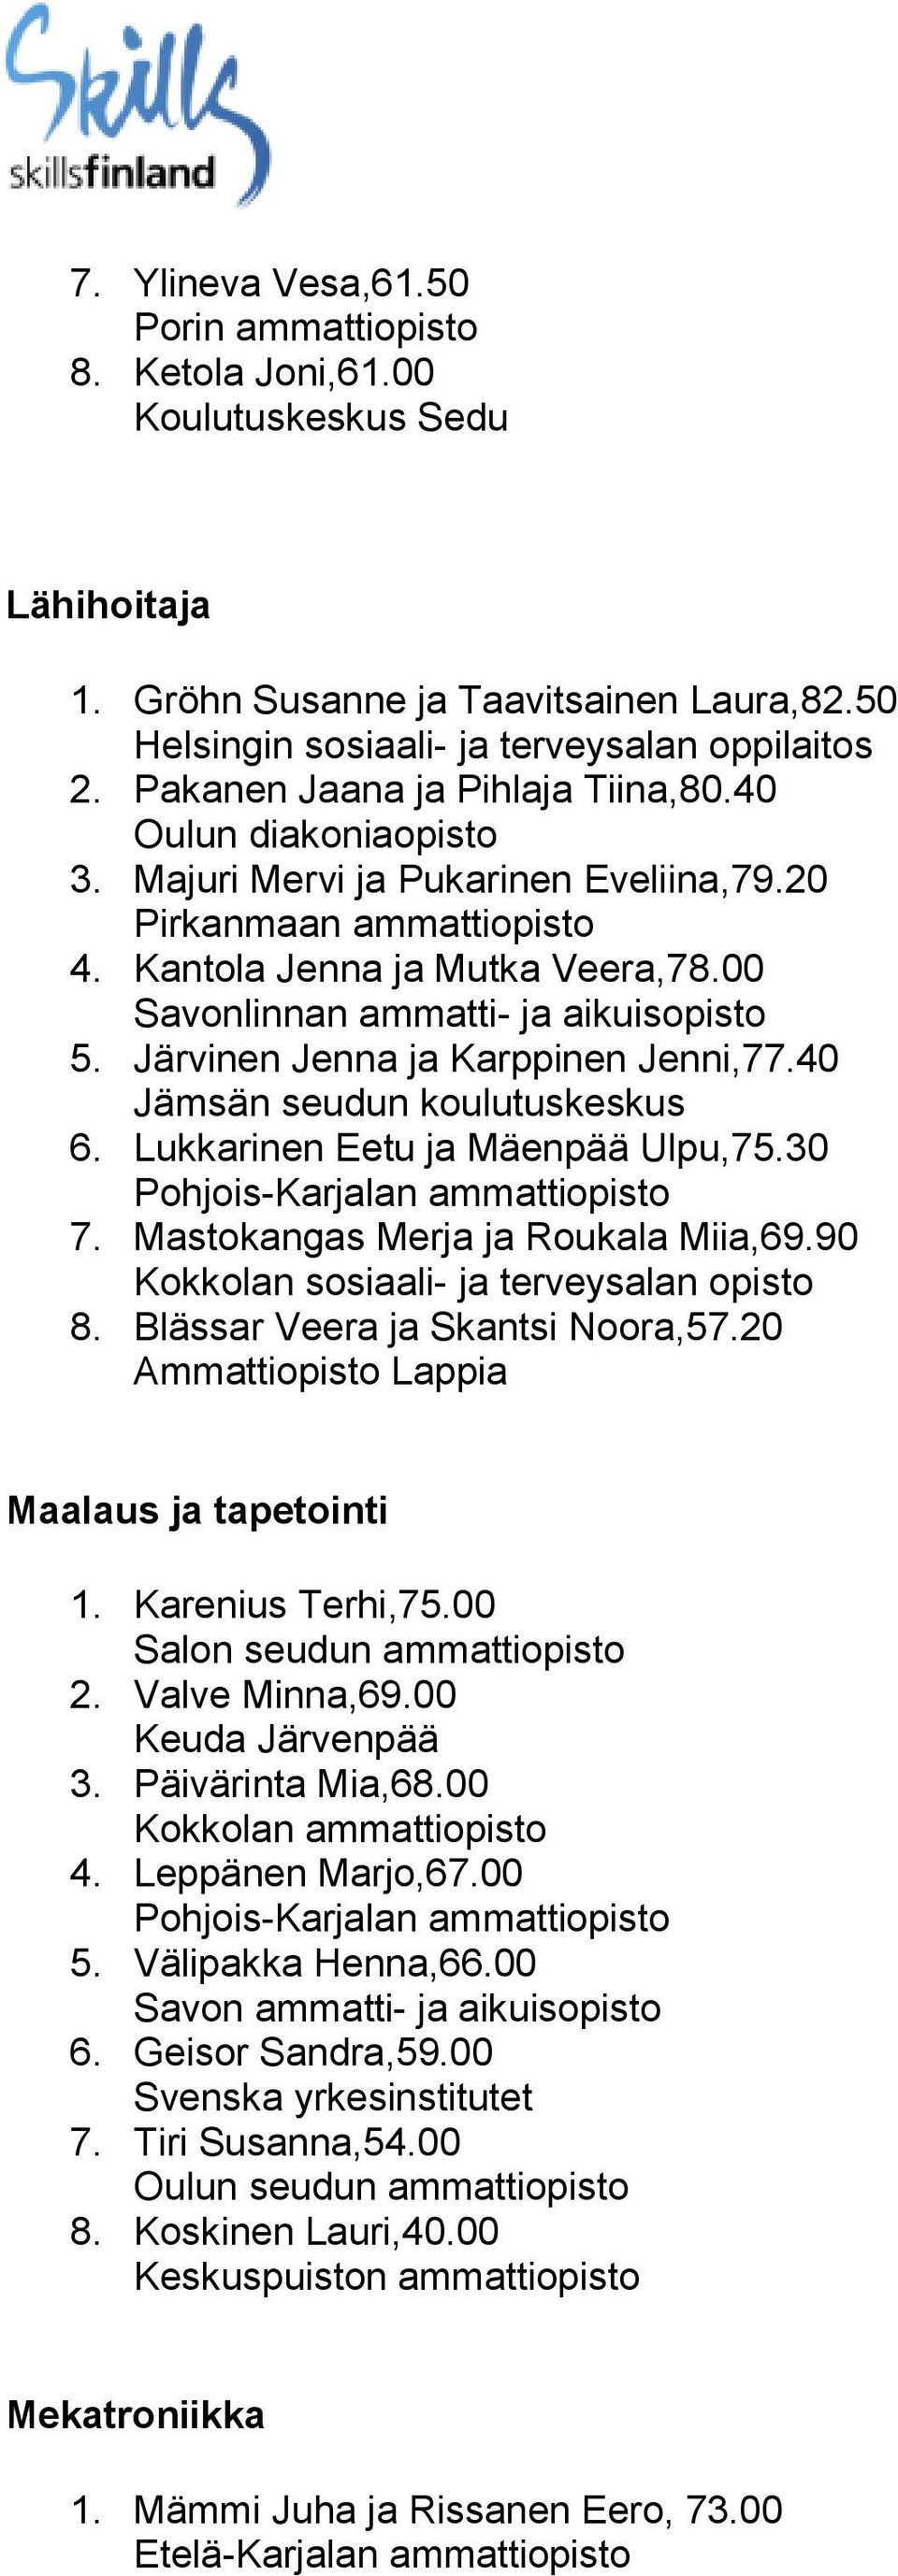 Järvinen Jenna ja Karppinen Jenni,77.40 Jämsän seudun koulutuskeskus 6. Lukkarinen Eetu ja Mäenpää Ulpu,75.30 7. Mastokangas Merja ja Roukala Miia,69.90 Kokkolan sosiaali- ja terveysalan opisto 8.